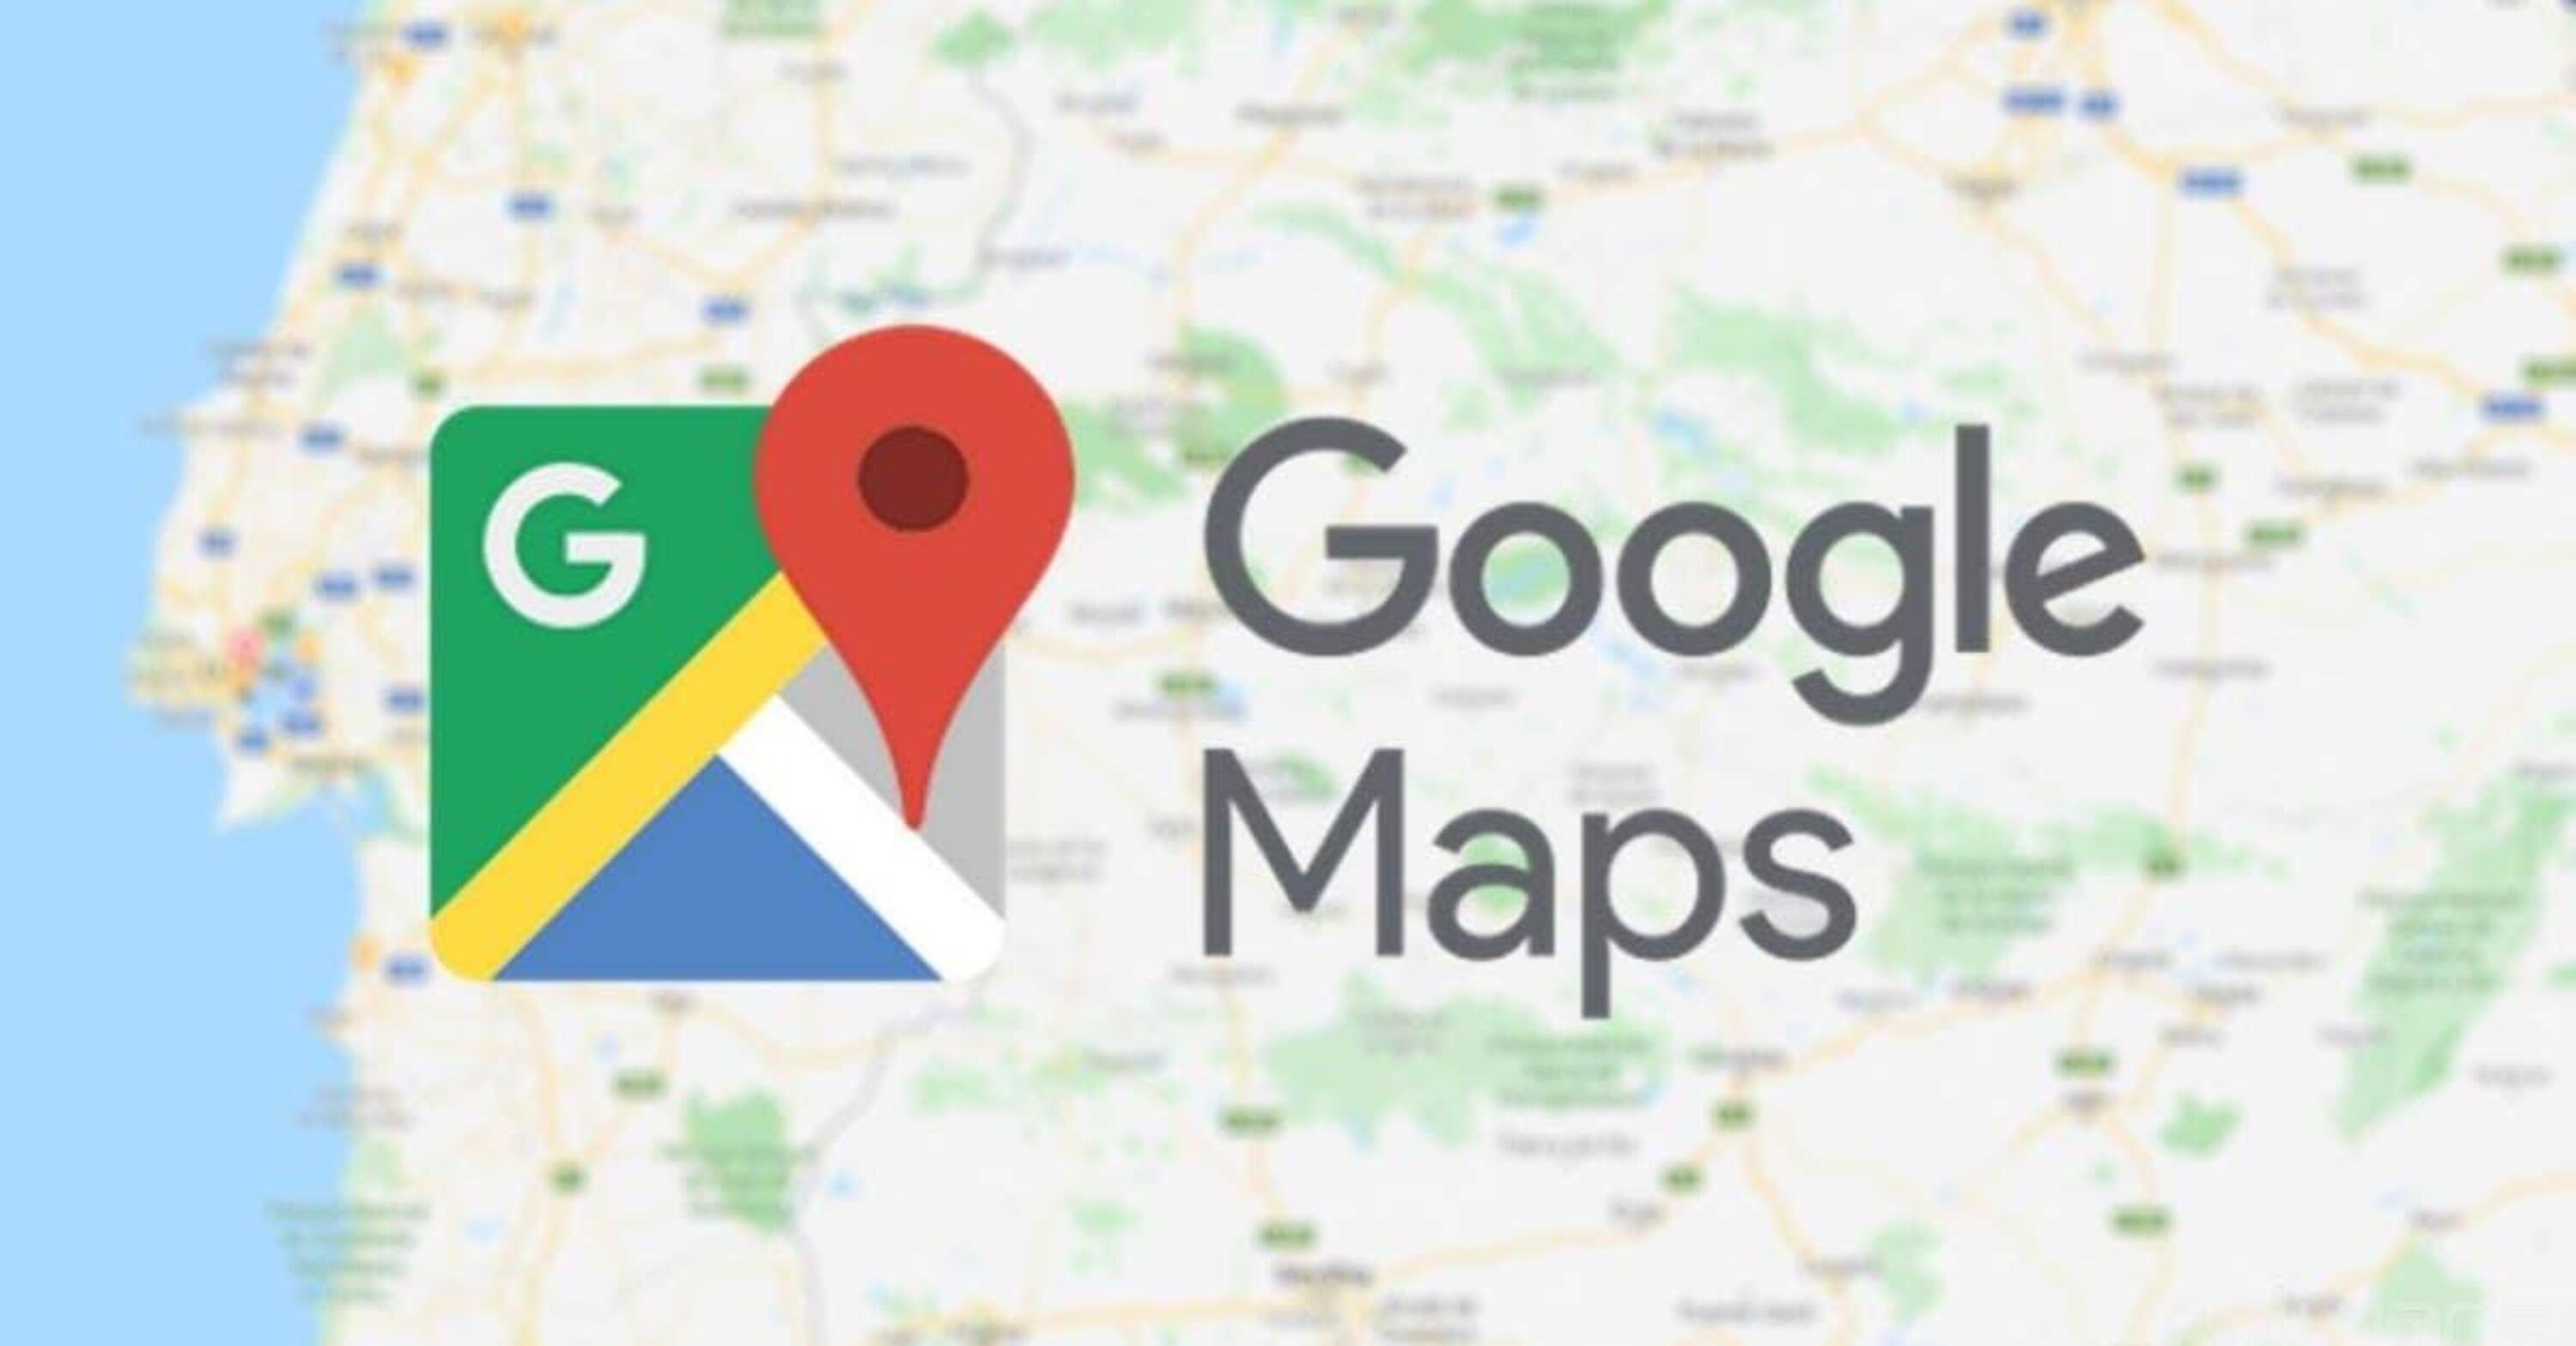 Ma perch&eacute; Google Maps odia le moto?